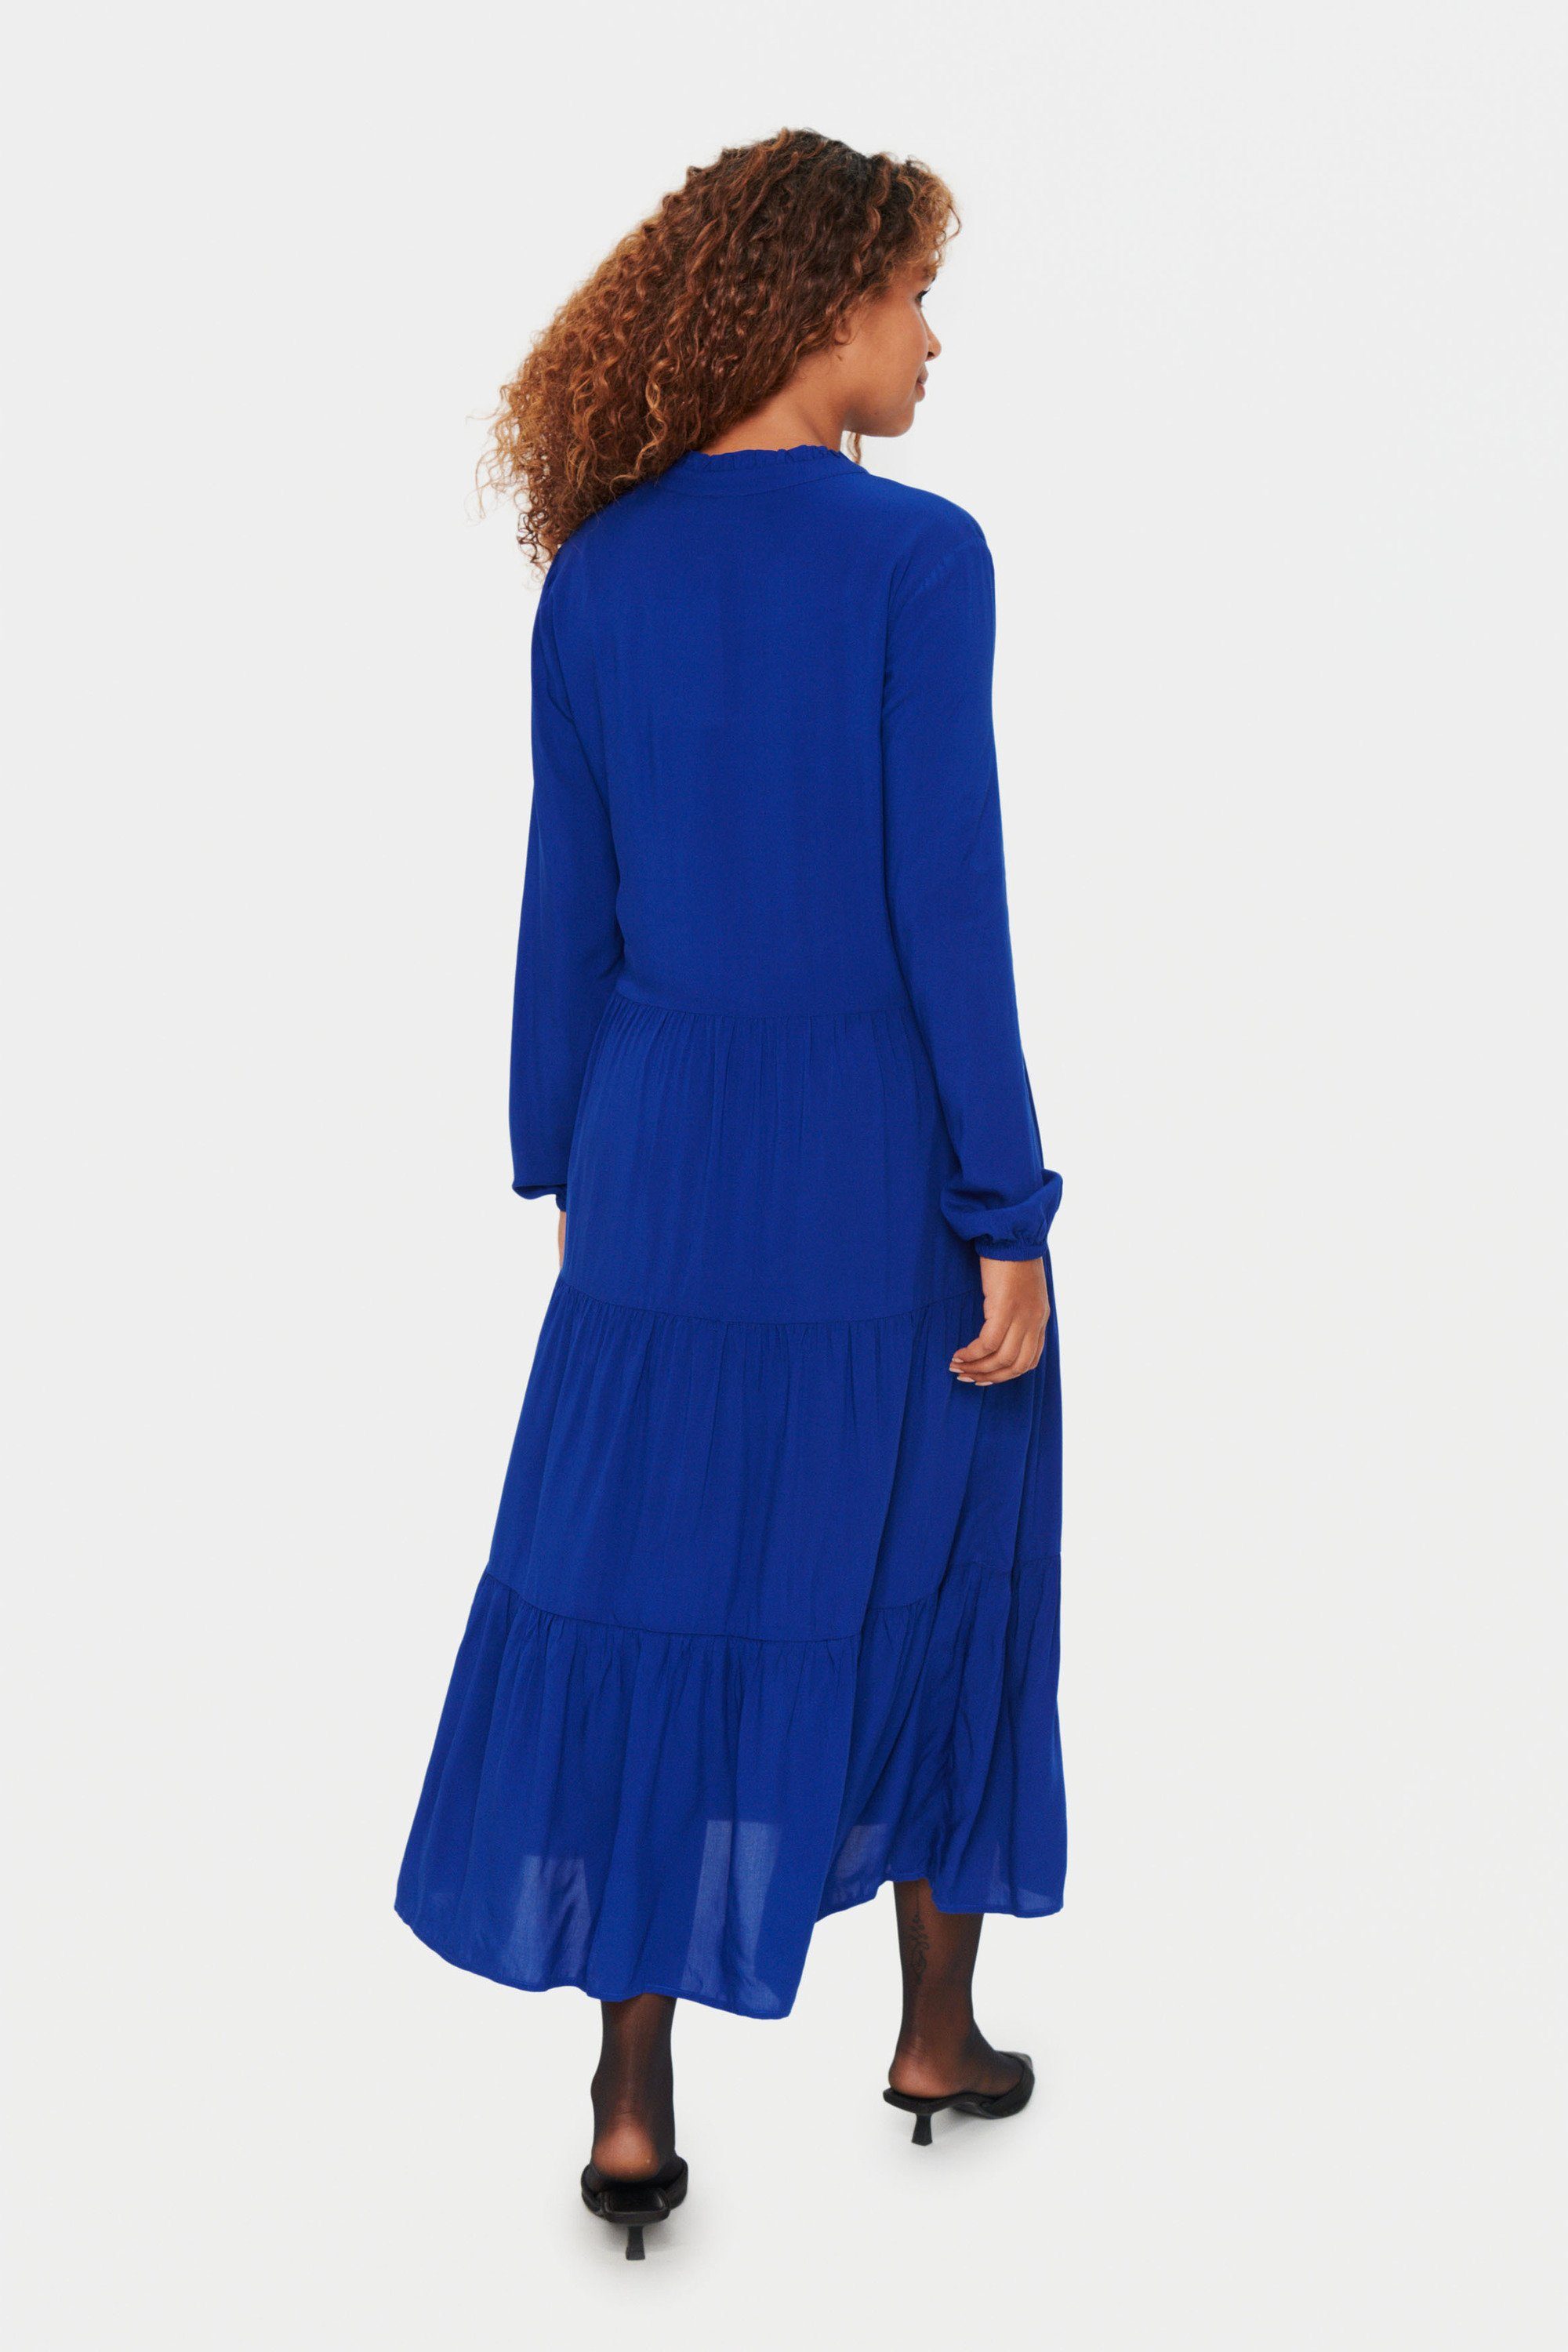 Kleid Sodalite Jerseykleid Blue Saint EdaSZ Tropez